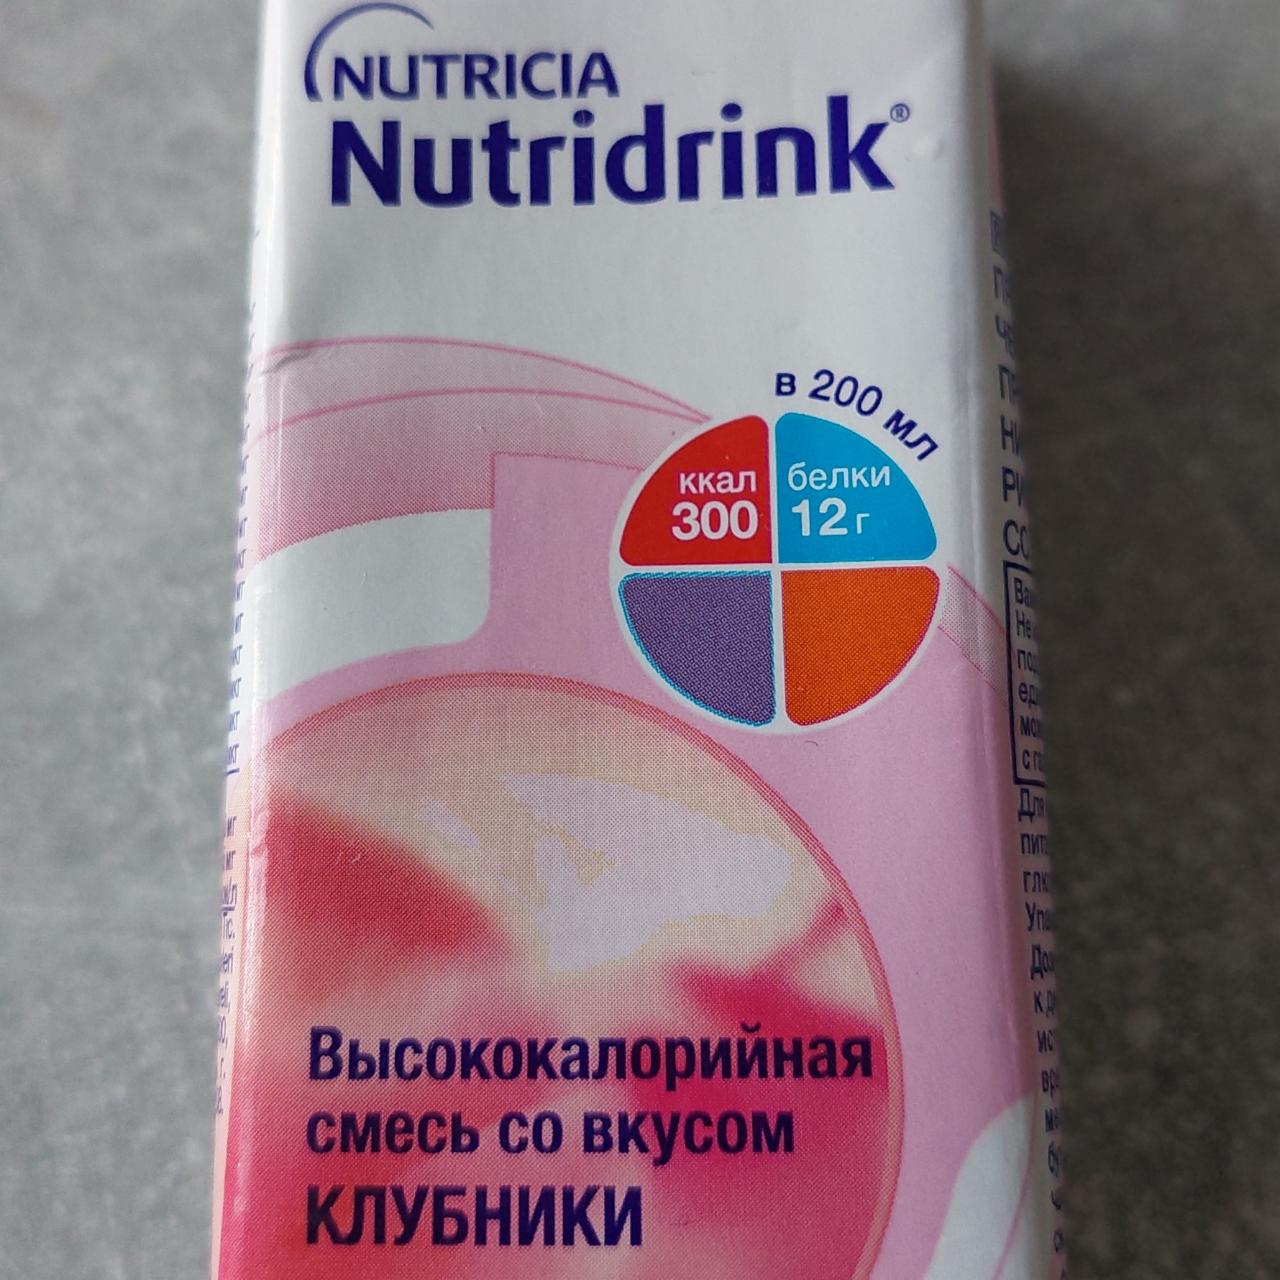 Фото - молочный питательный напиток Nutridrink со вкусом клубники Nutricia